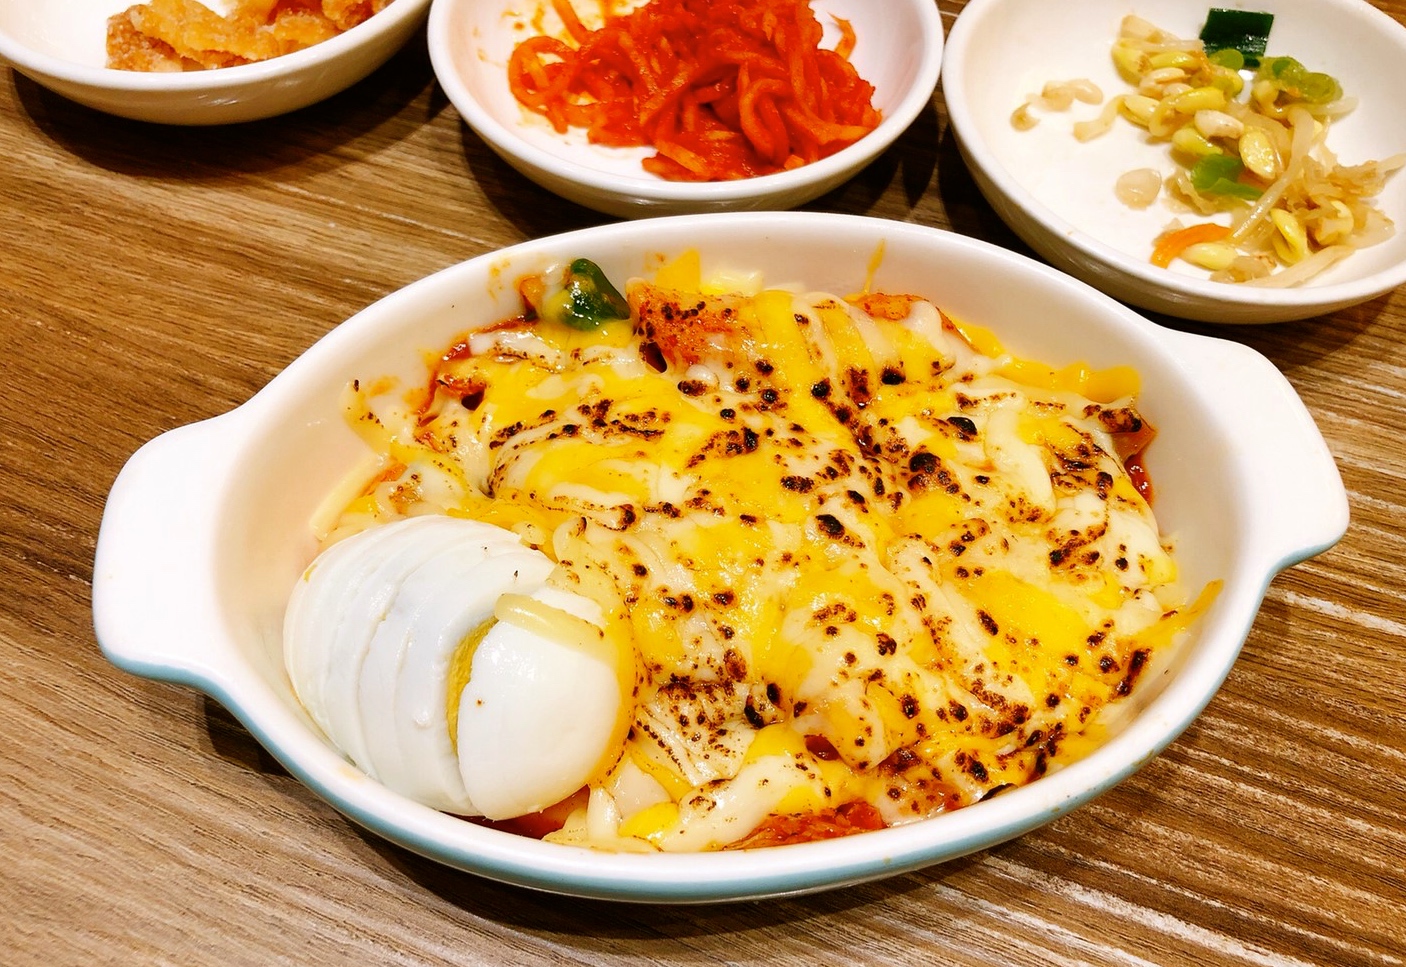 【食 韓食拌樂 bibim】大阪連鎖品牌(三井outlet分店)。韓式小菜無限吃到飽！天冷就是要吃韓國部隊鍋